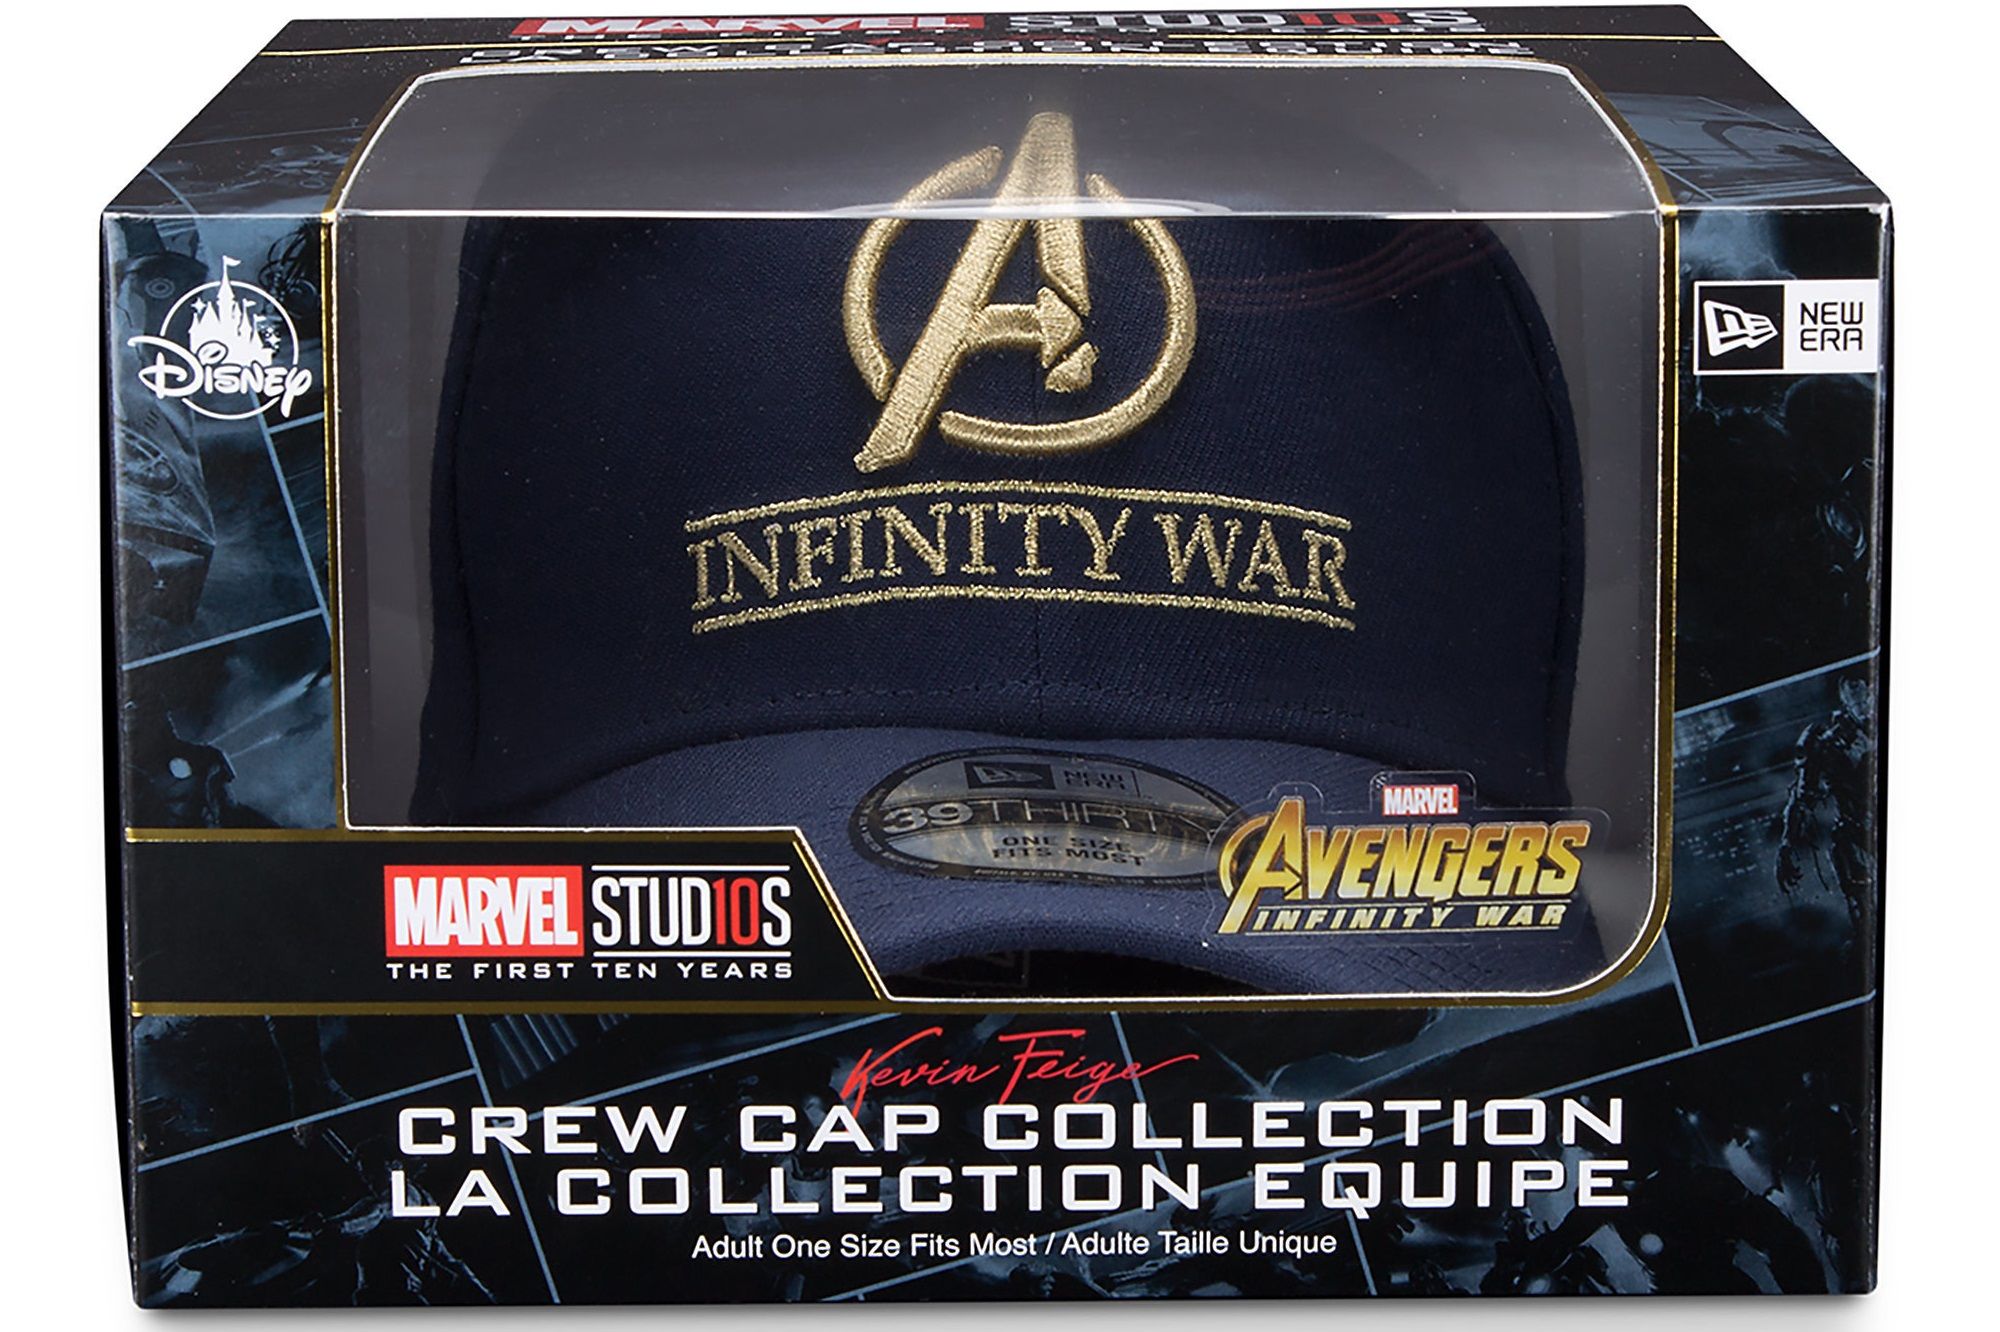 Avengers Infinity War Disney crew cap